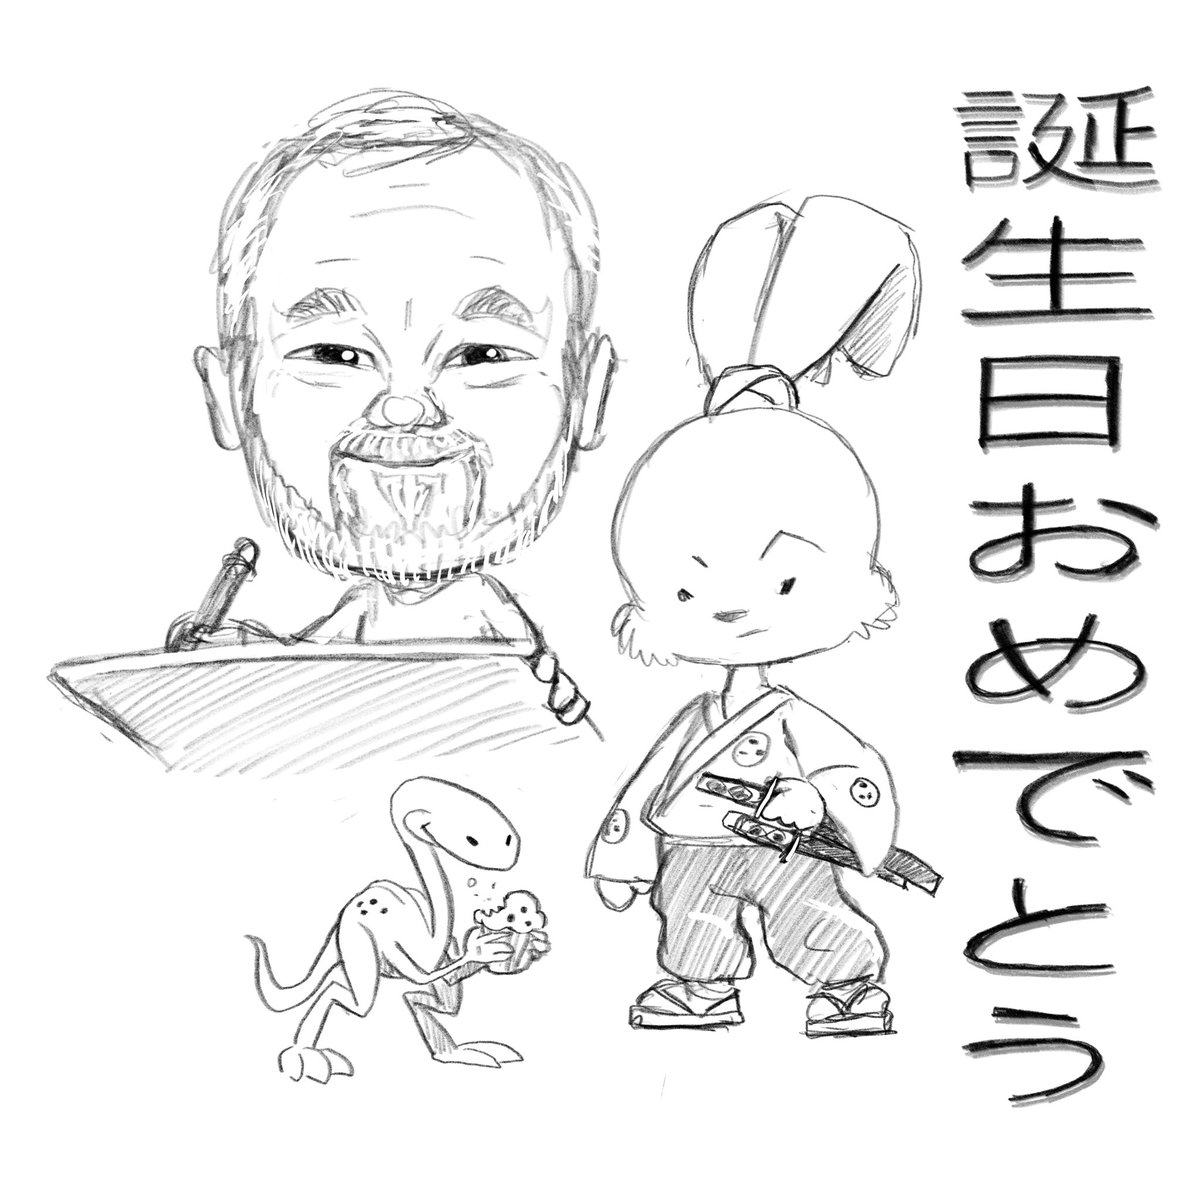 #誕生日おめでとう @stansakai #usagiyojimbo #samurai #rabbit 
#武士 #chibi #happybirthday #stansakai #spot #eep #ronin #sketch #doodle #tribute #blueberrymuffins